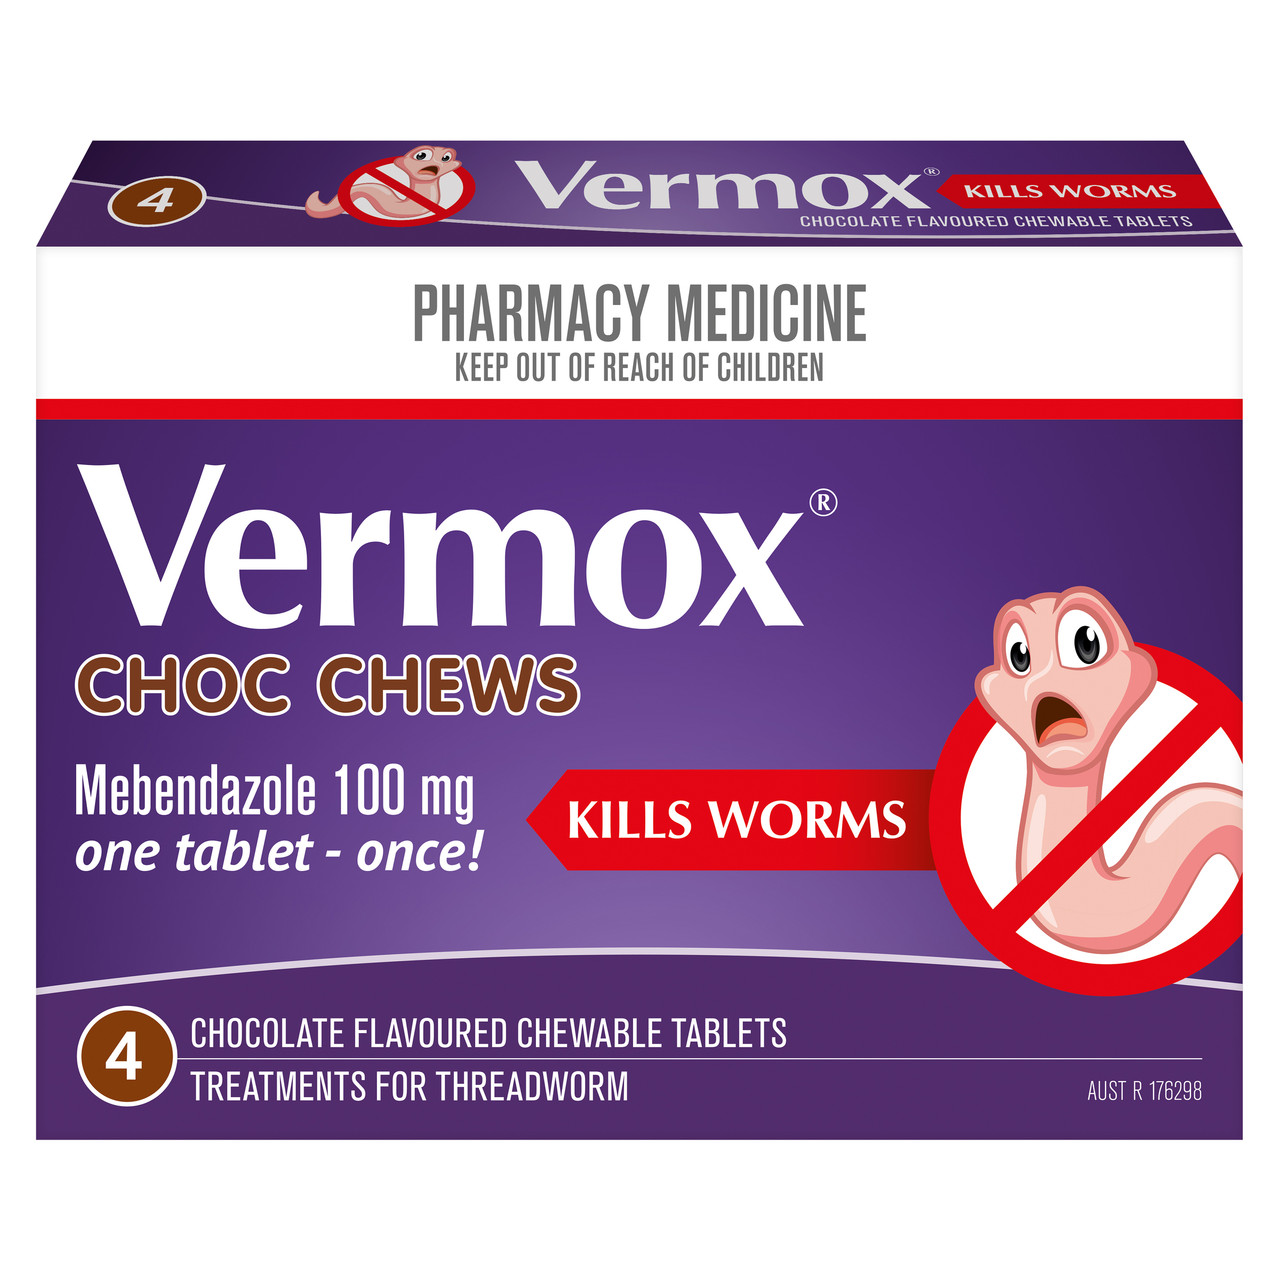 Co dělá Vermox?